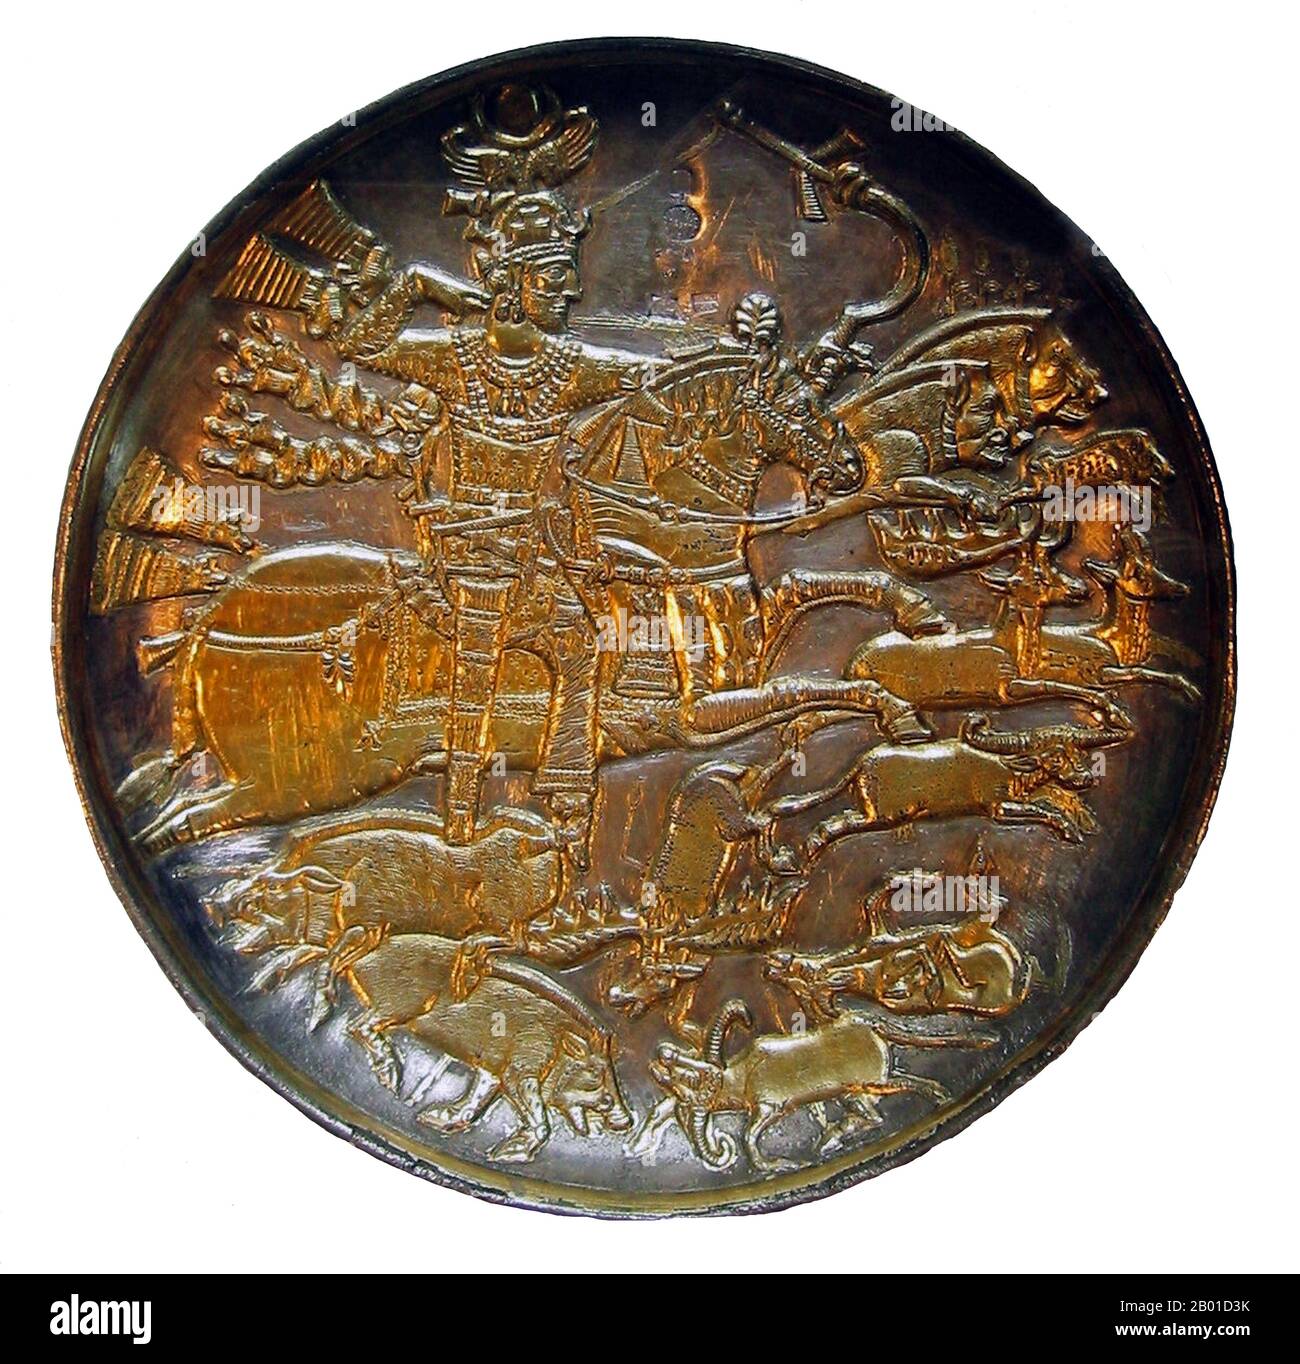 Iran: Jagdszene auf einer vergoldeten silbernen Schale, die König Khosrau I (512/514-579 CE) zeigt, 7.. Jahrhundert. Foto von World Imaging (CC BY-SA 3,0 Lizenz). Khosrau I (auch Xusro, Khosnow, Chusro, Khusro, Husraw oder Khosrow genannt, Chosroes in klassischen Quellen, am häufigsten im Persischen als Anushirvan bekannt, was die unsterbliche Seele bedeutet), auch bekannt als Anushiravan der Gerechten (r. 531-579), war der 25. Sassanid "Shahanshah" (König der Könige) von Persien, und der berühmteste und gefeierteste der Sasanian Herrscher. Stockfoto